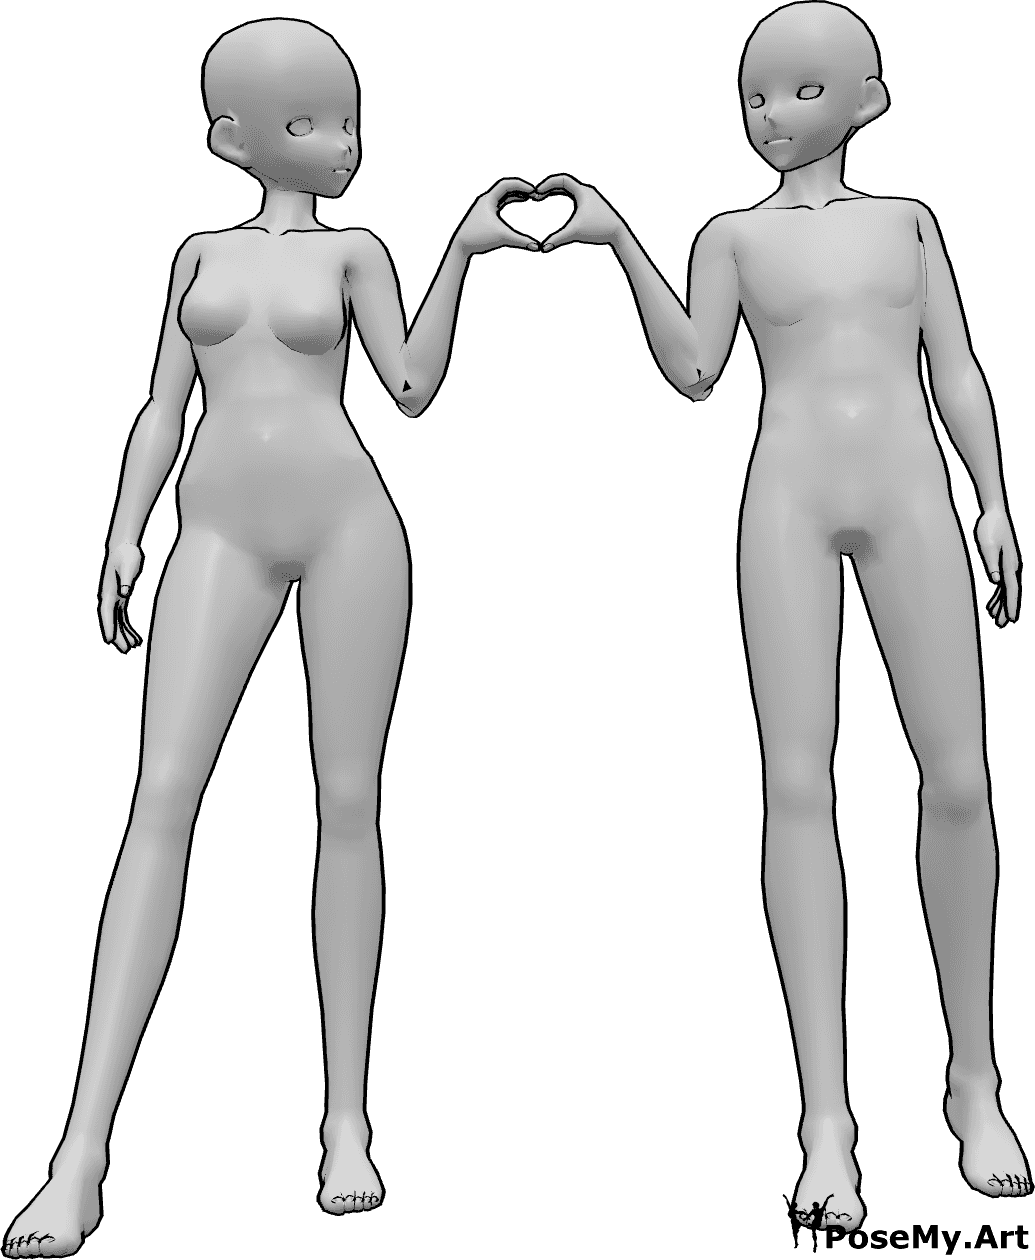 Referência de poses- Pose de coração masculino feminino - Anime feminino e masculino estão de pé um ao lado do outro e fazem um coração com as mãos